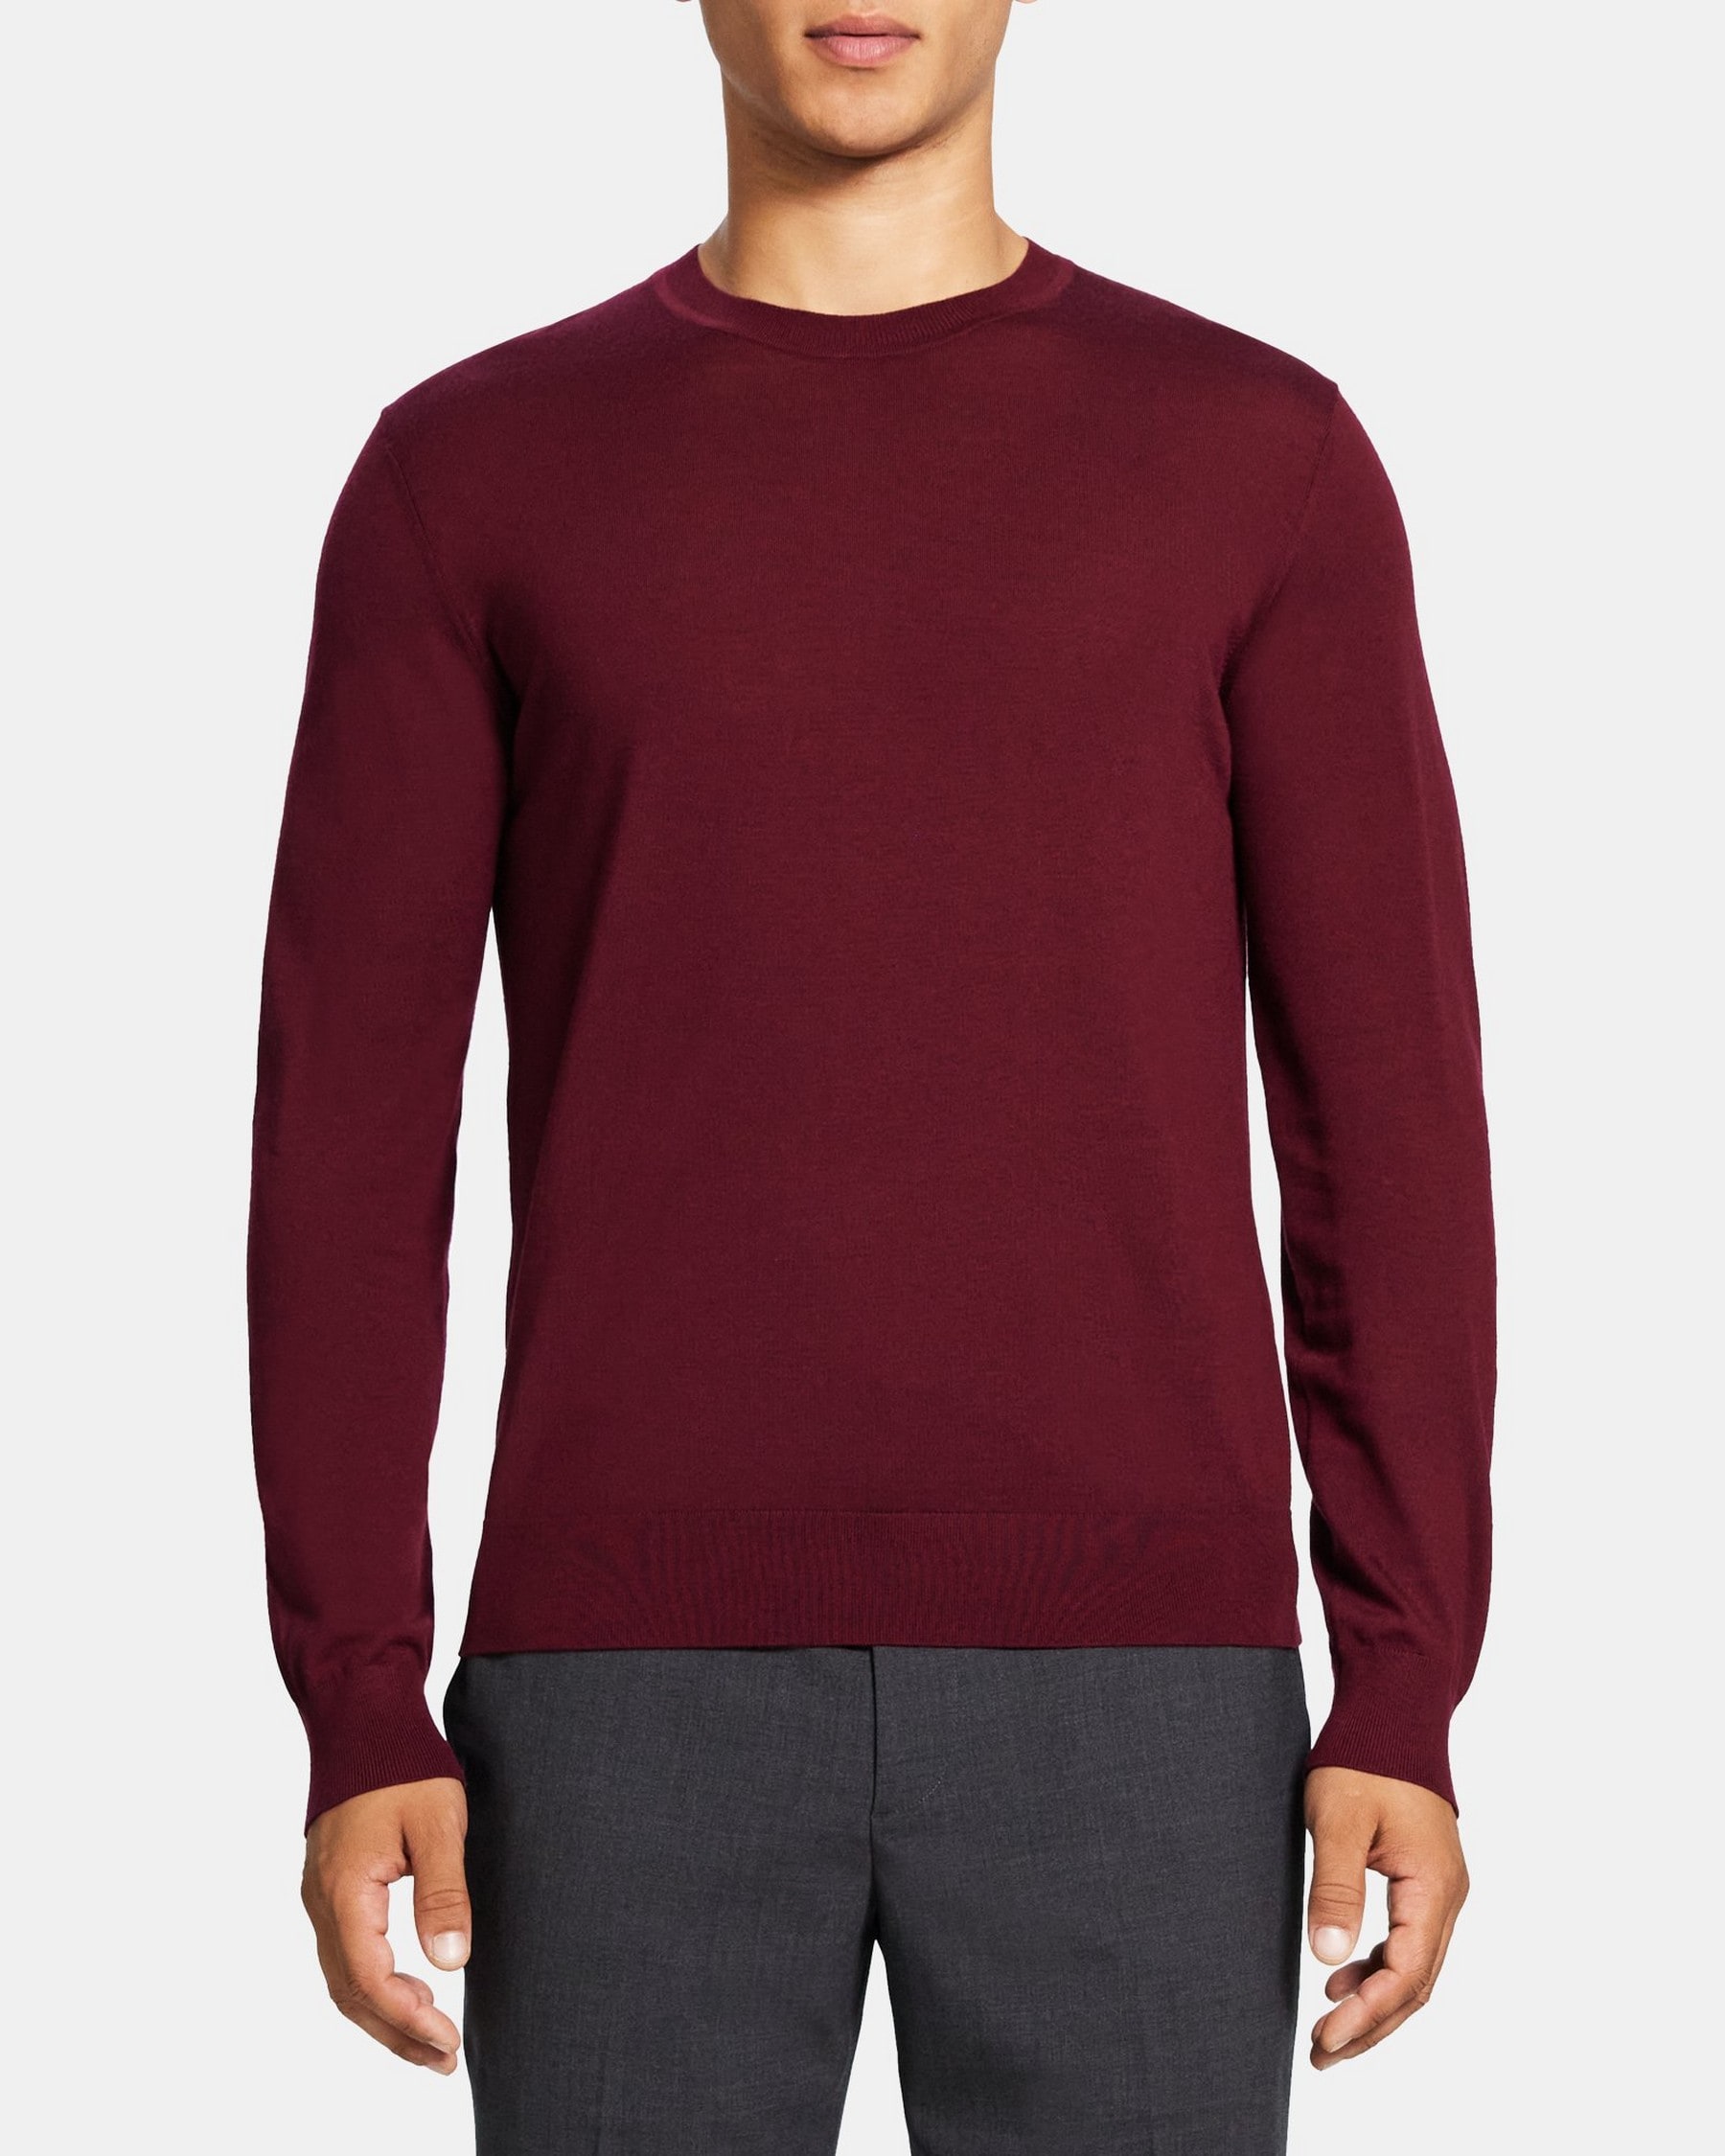 띠어리 Theory Crewneck Sweater in Merino Wool,WINE